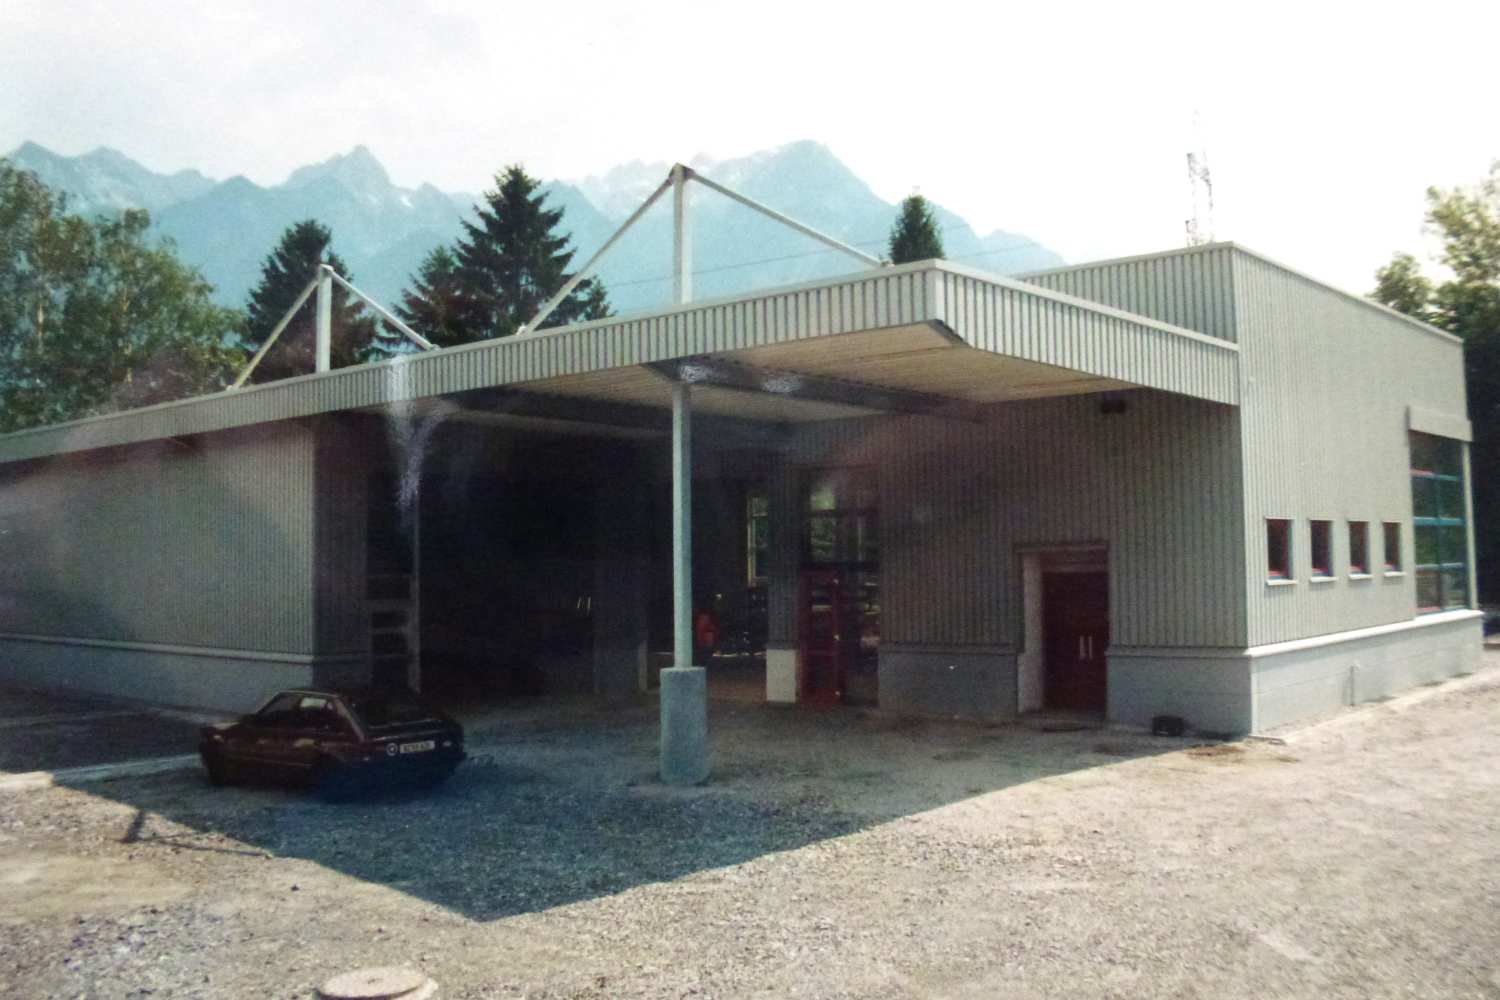 1995 – Bau Werkstatt zur Verarbeitung von Edelstahl